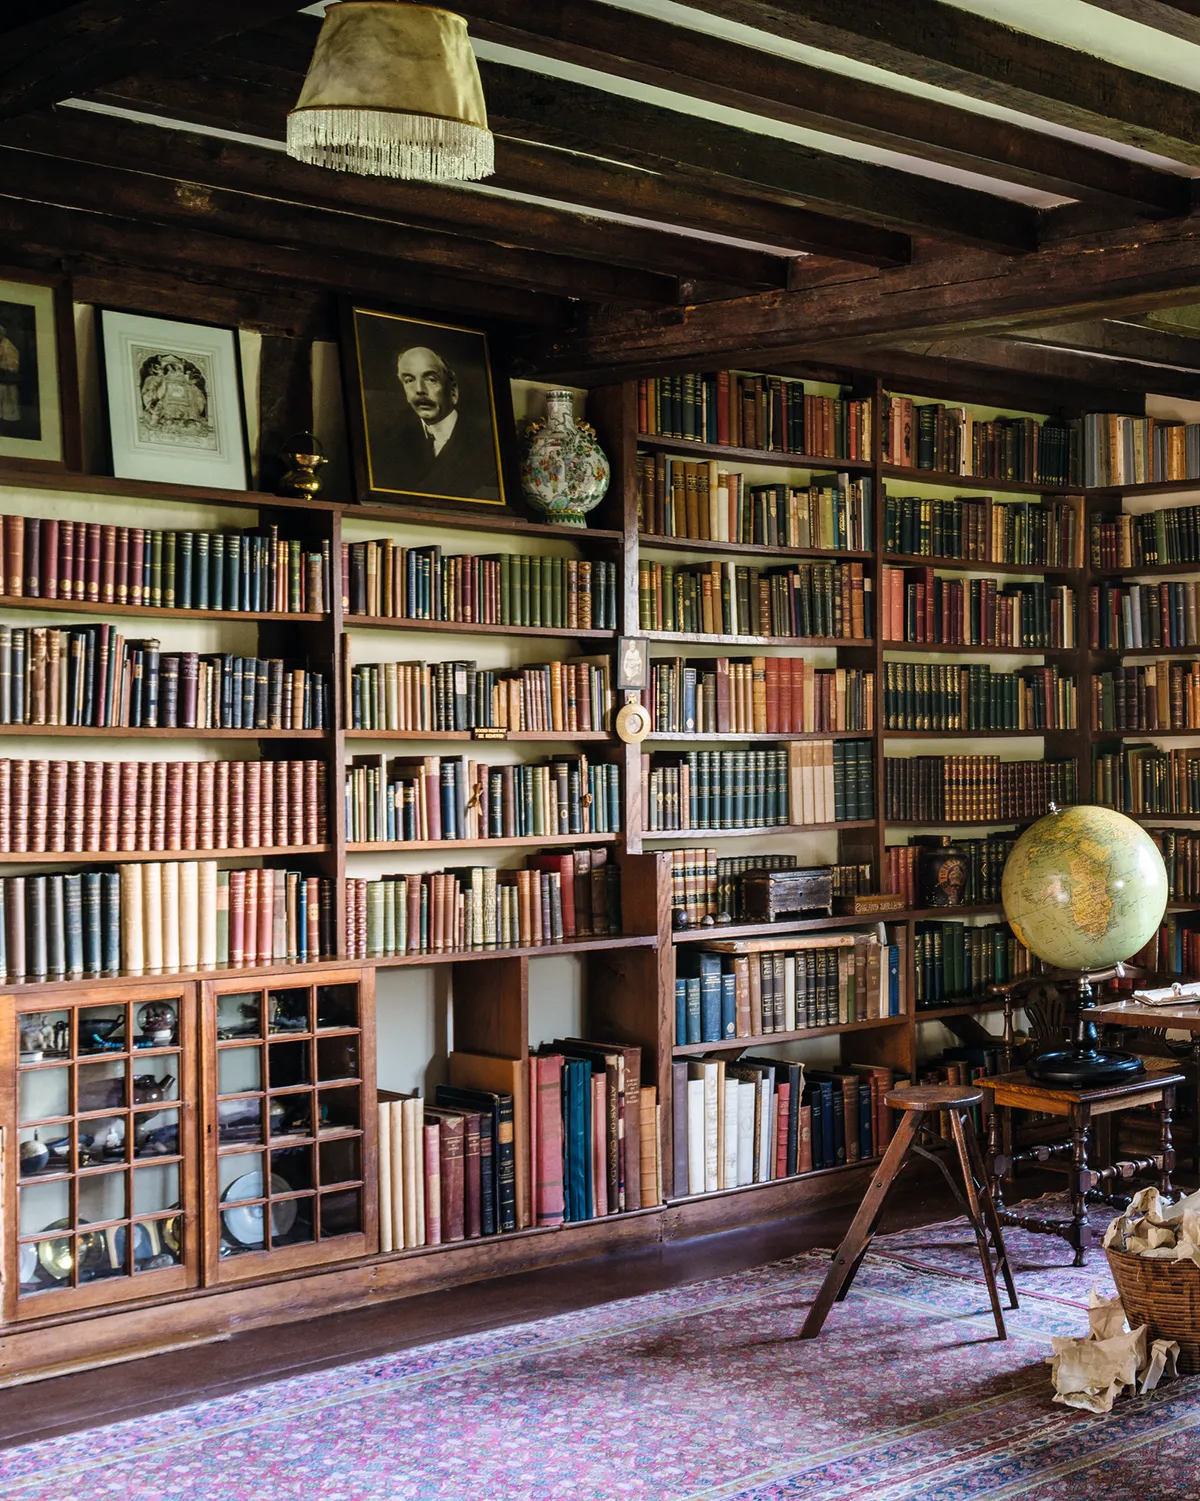 Rudyard Kipling's Sussex house book lined walls